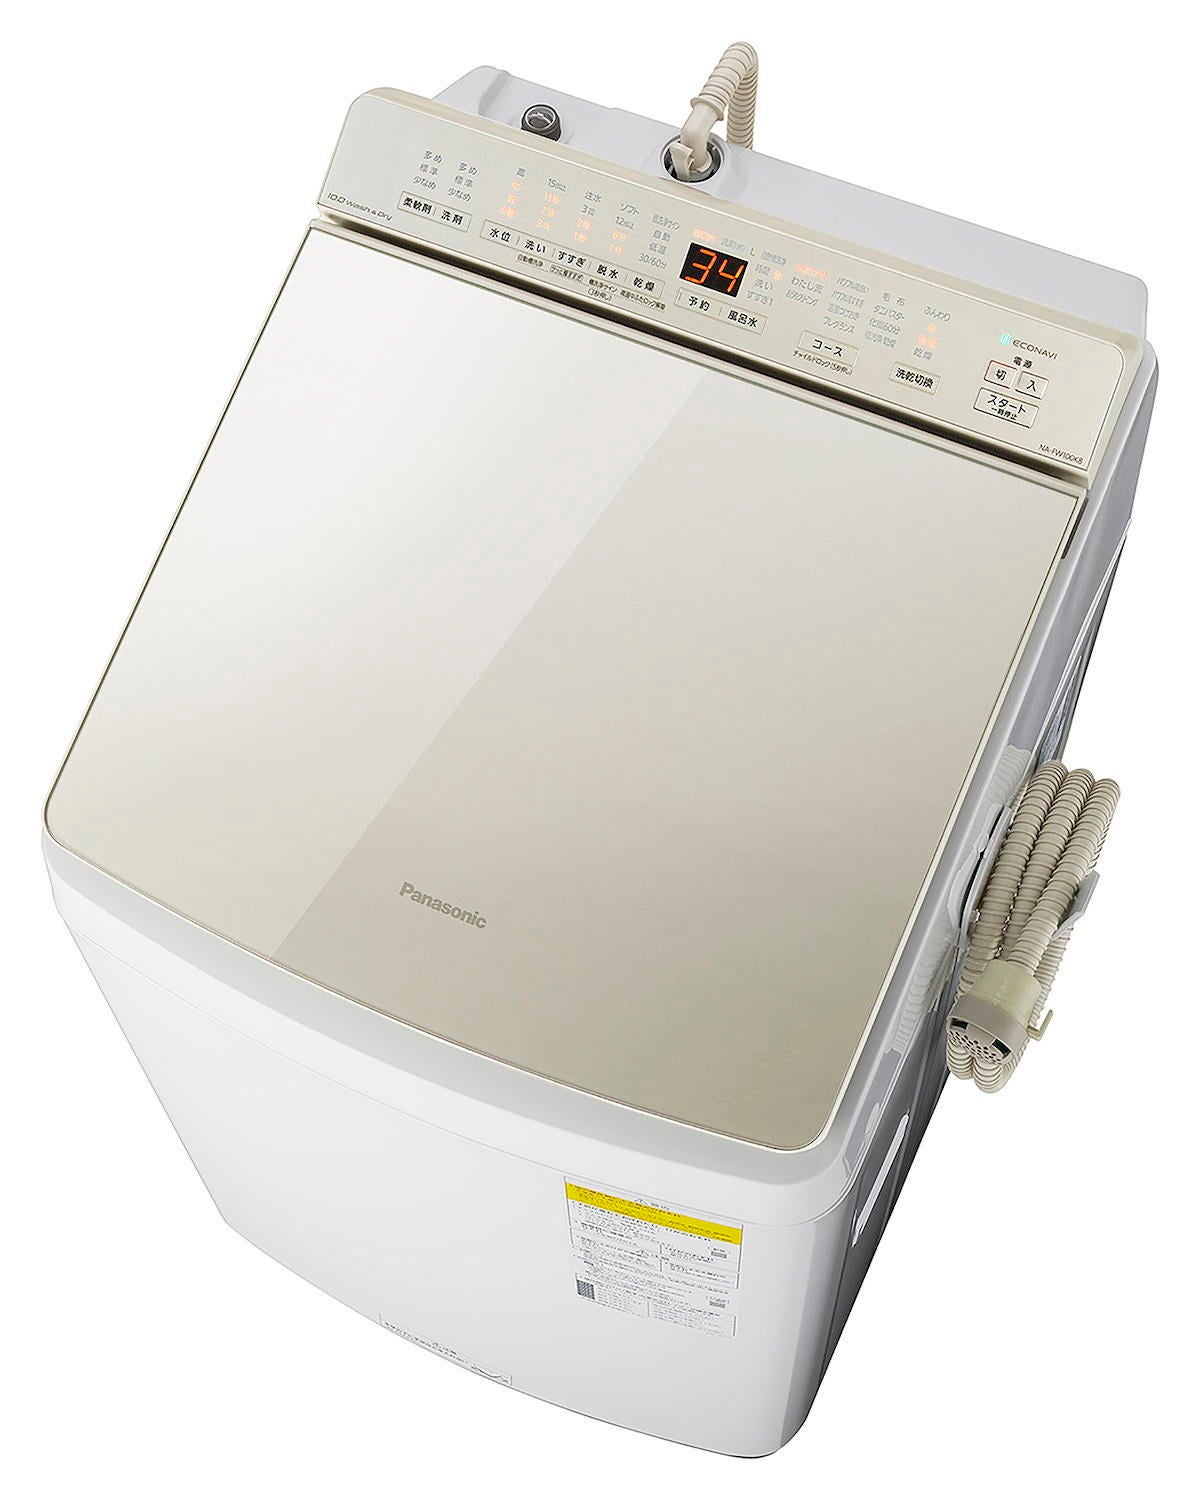 全自動洗濯機 Panasonic NA-FW80K8 - 洗濯機